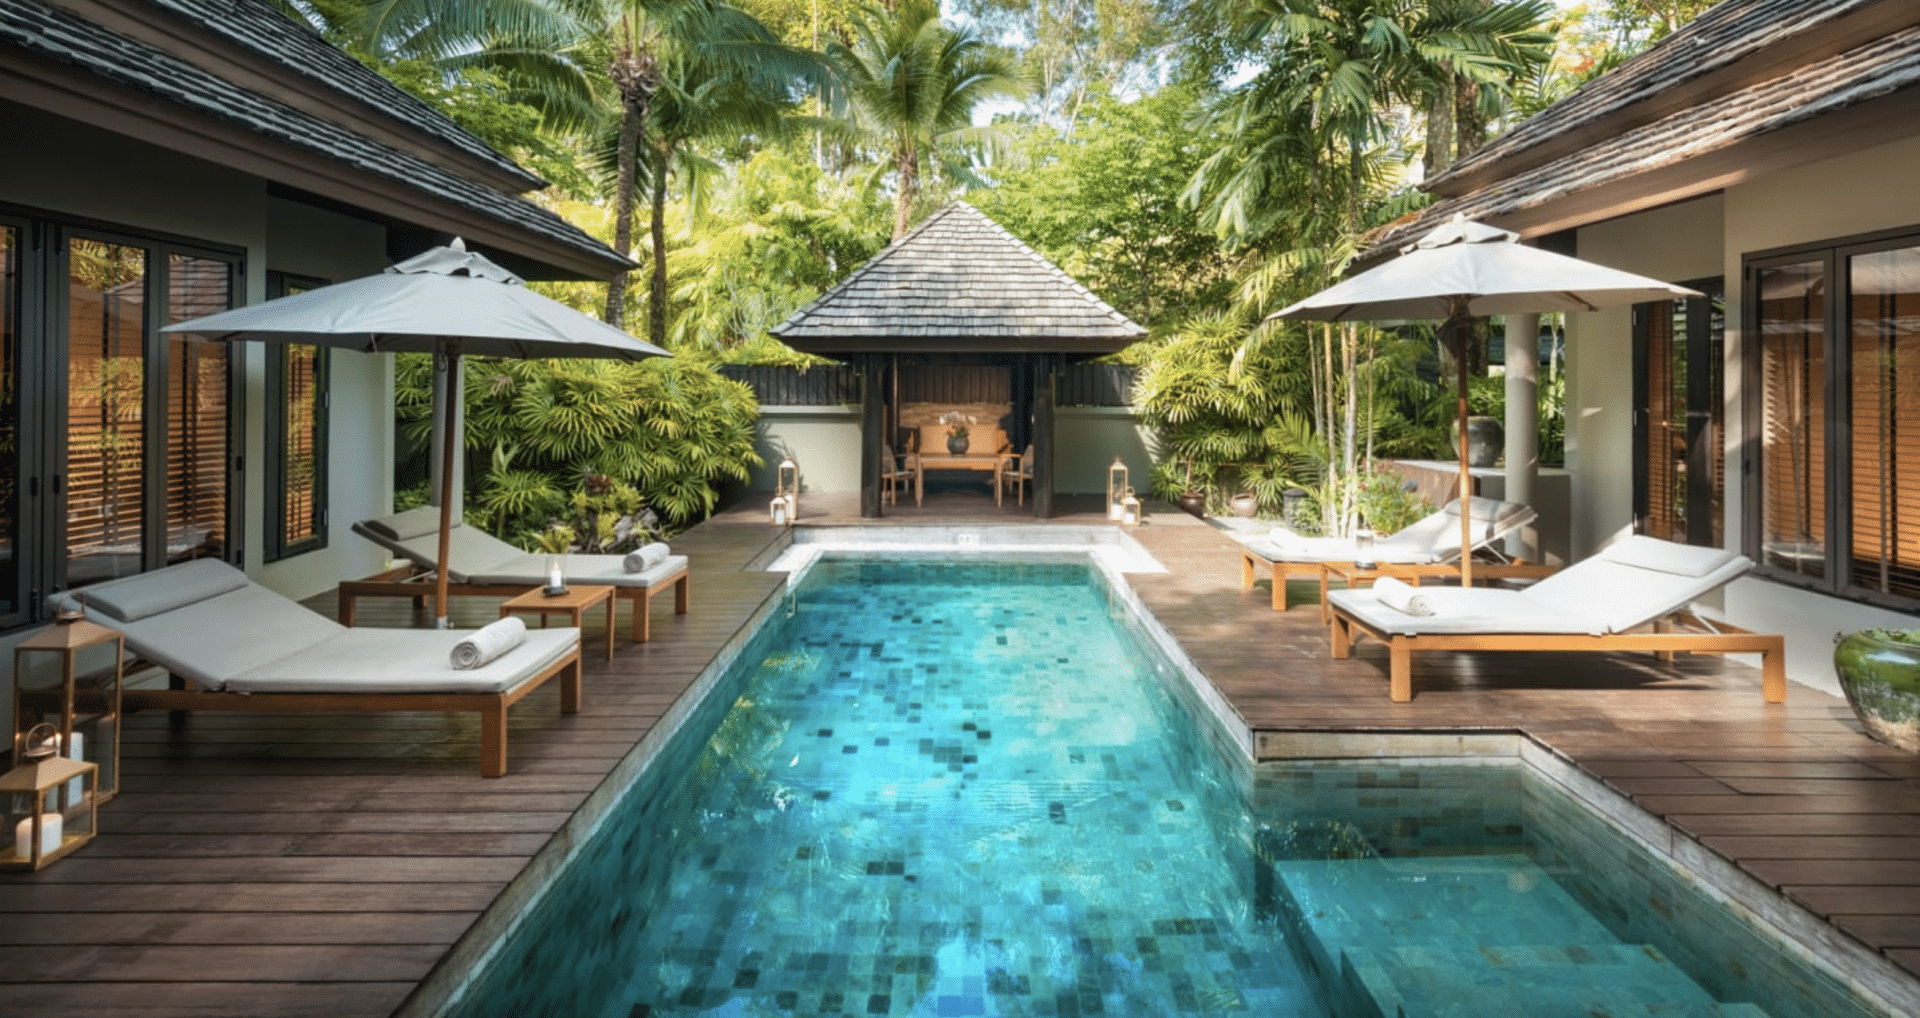 Anantara phuket pool villa, thailand